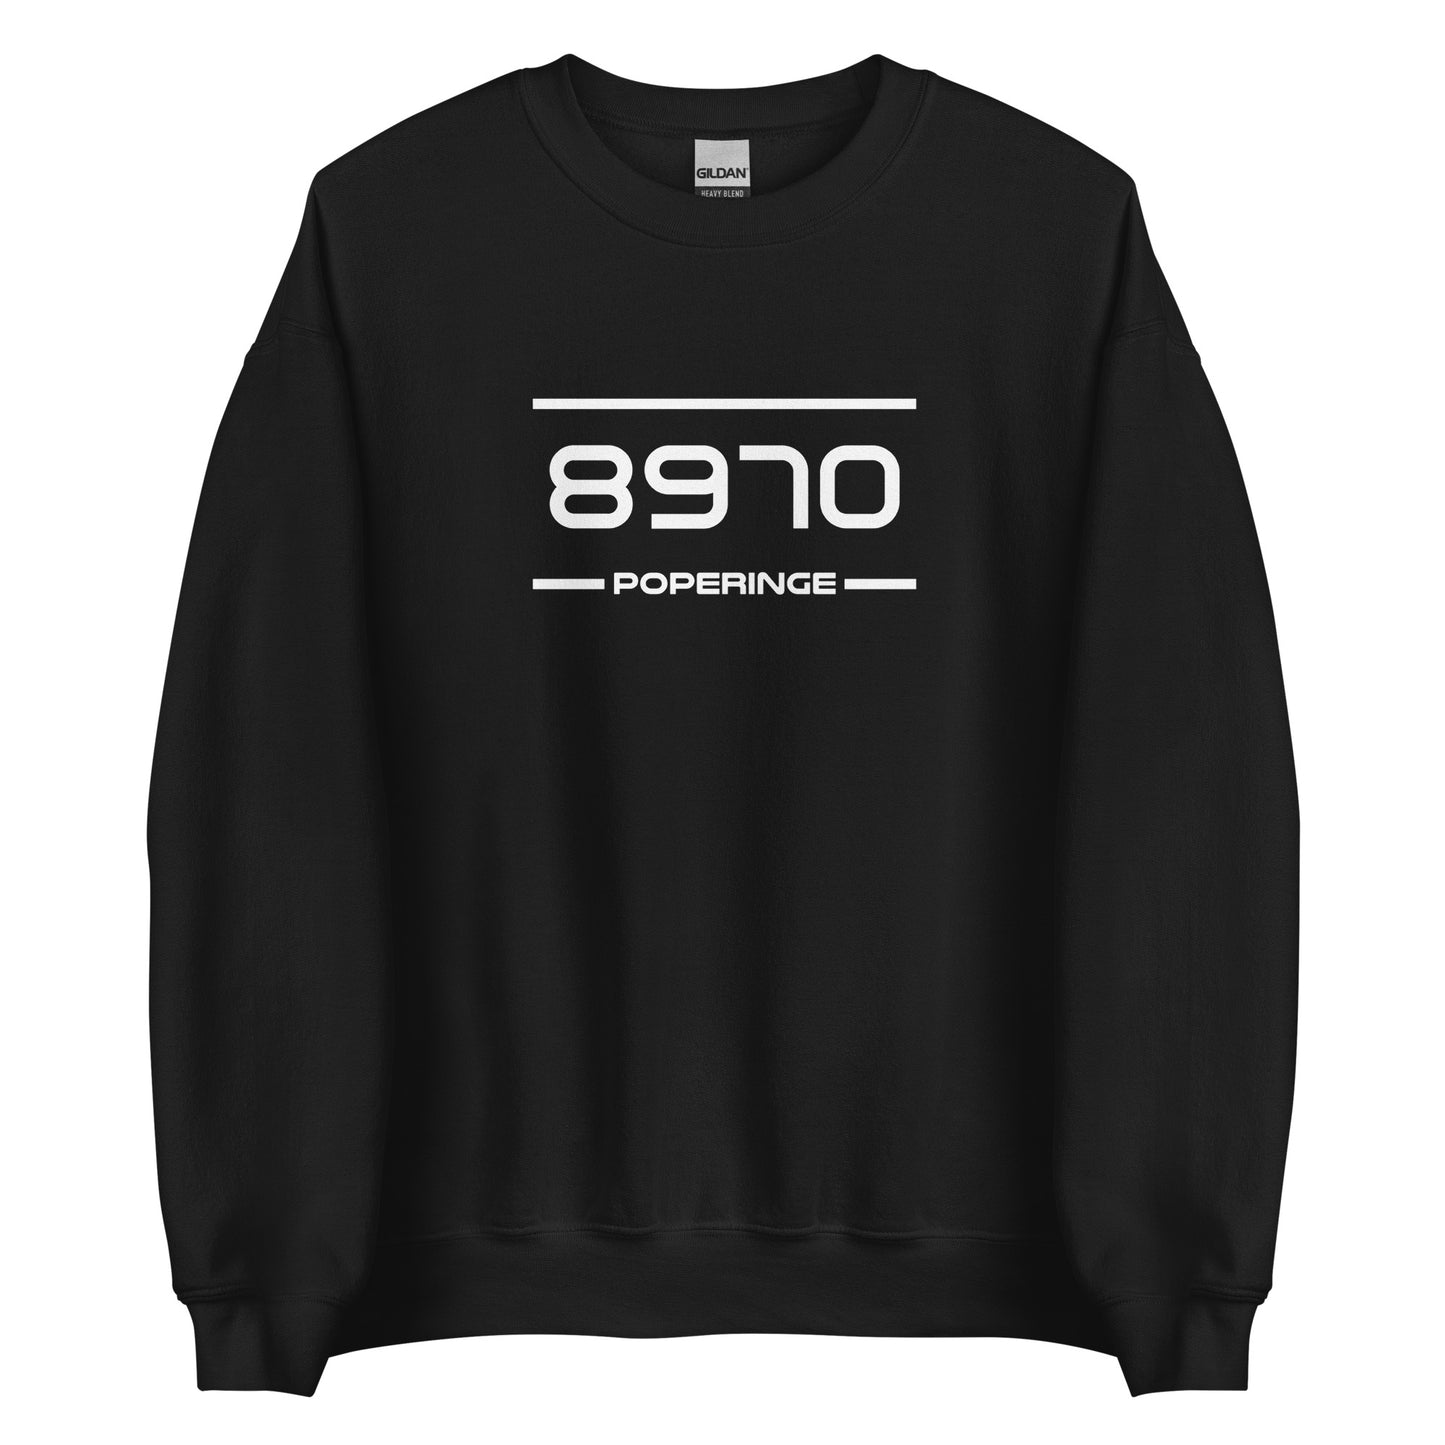 Sweater - 8970 - Poperinge (M/V)